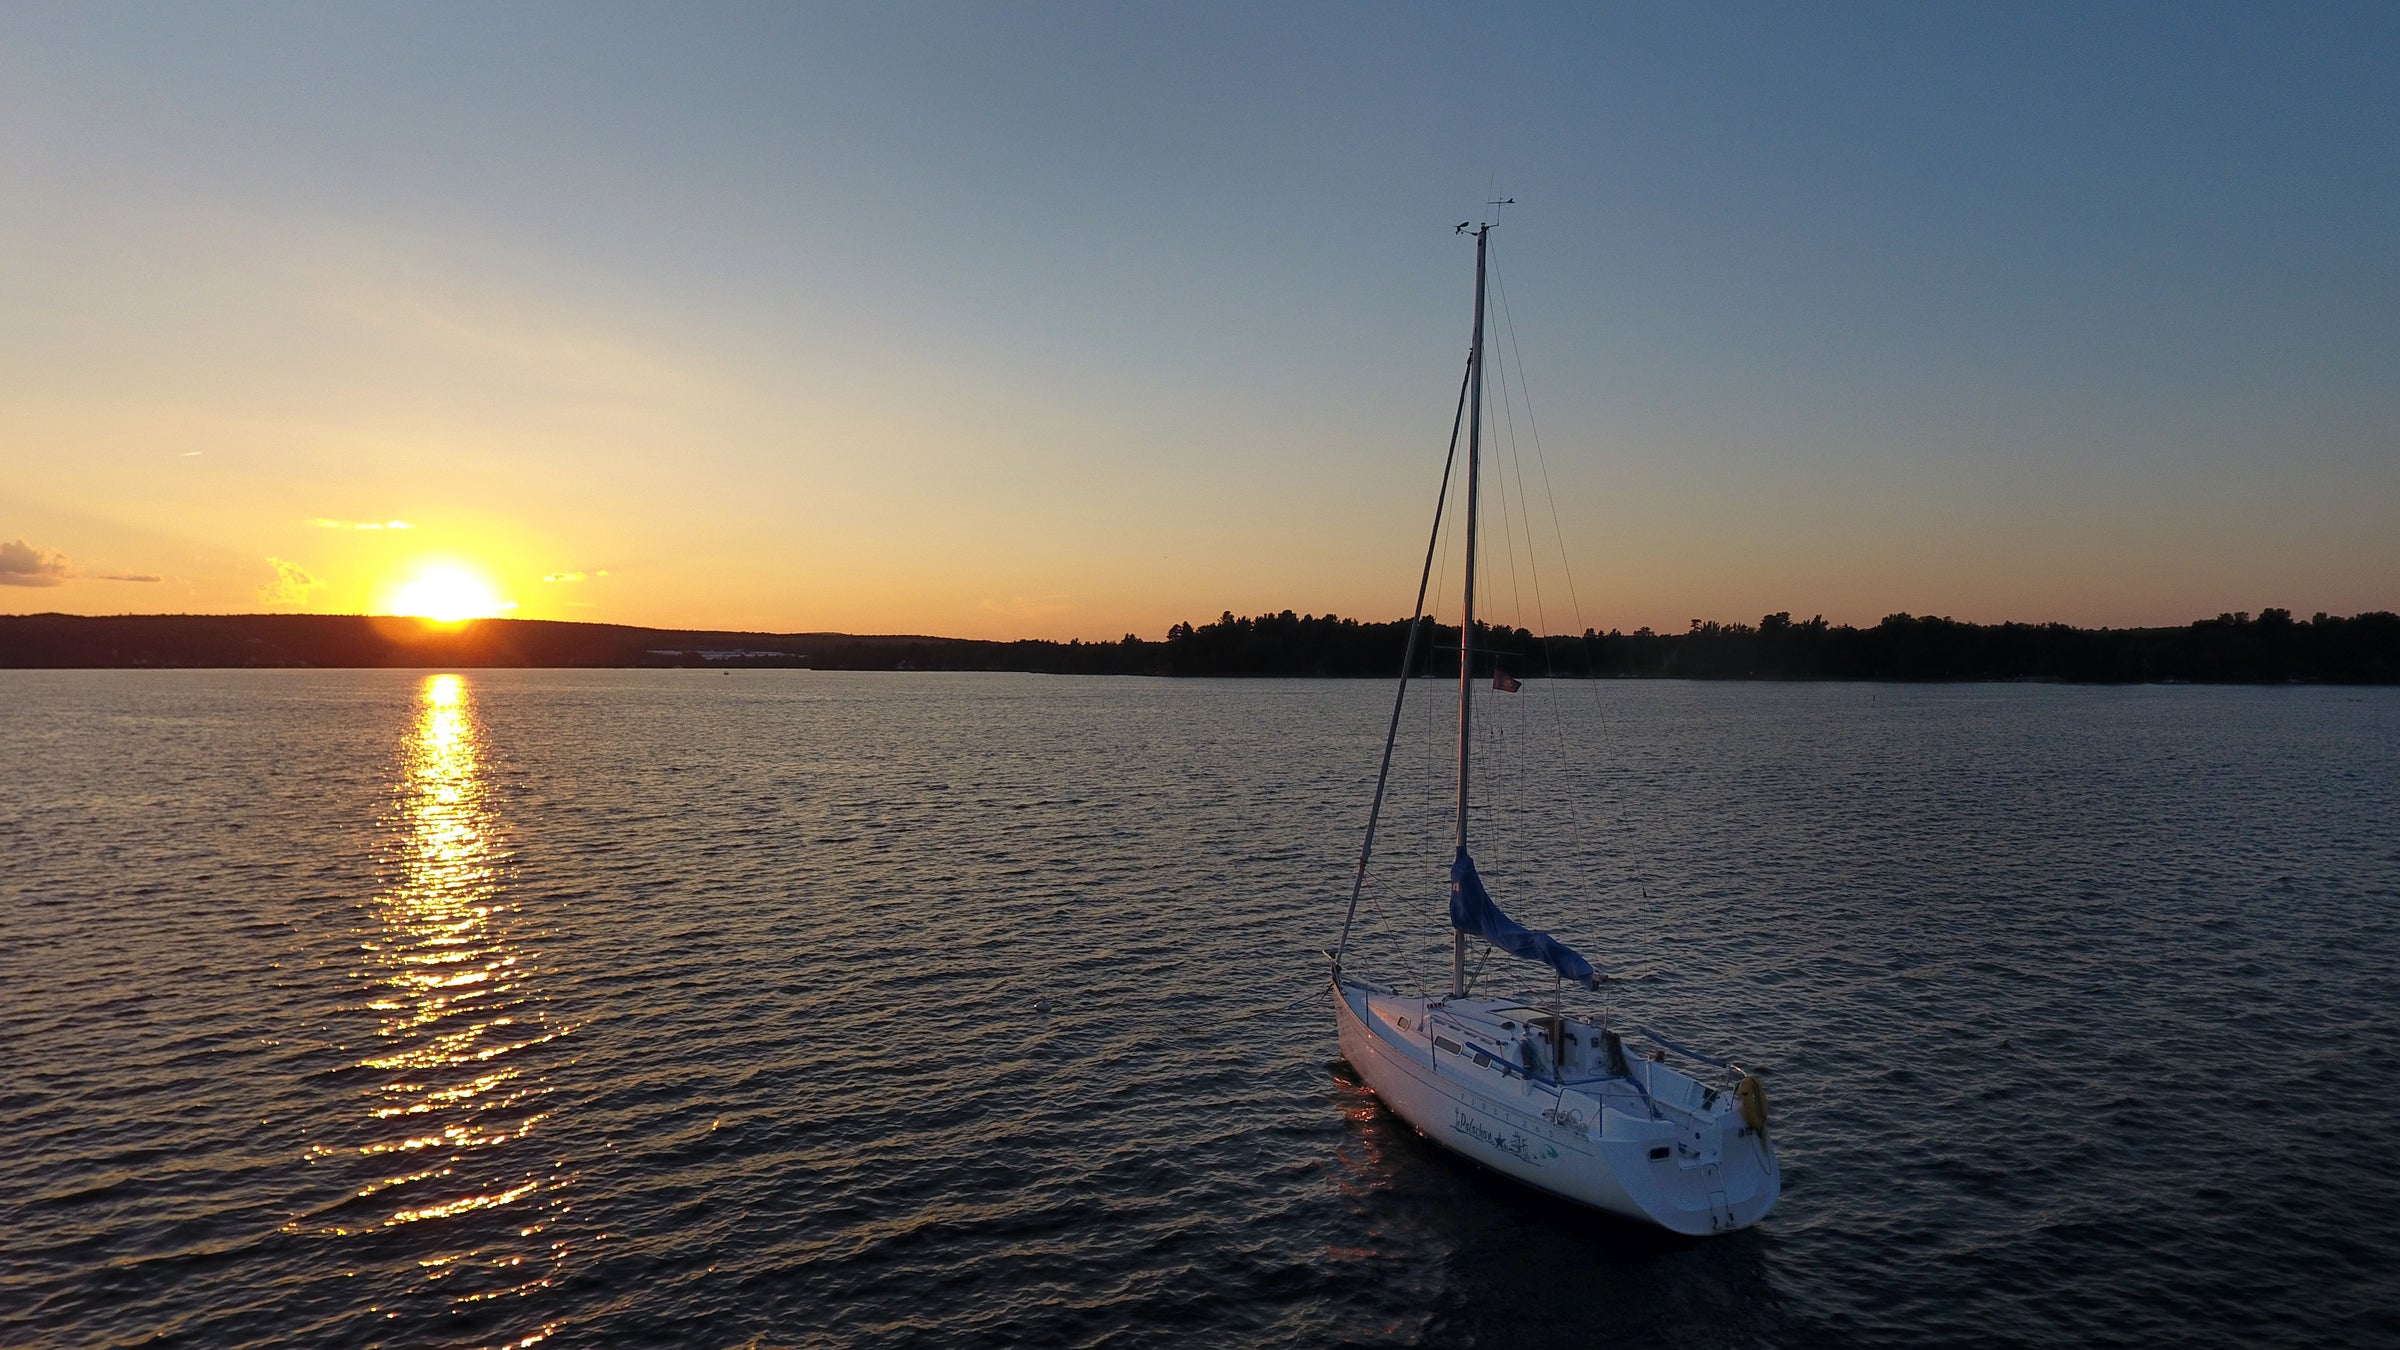 Sailboat photo at sunset